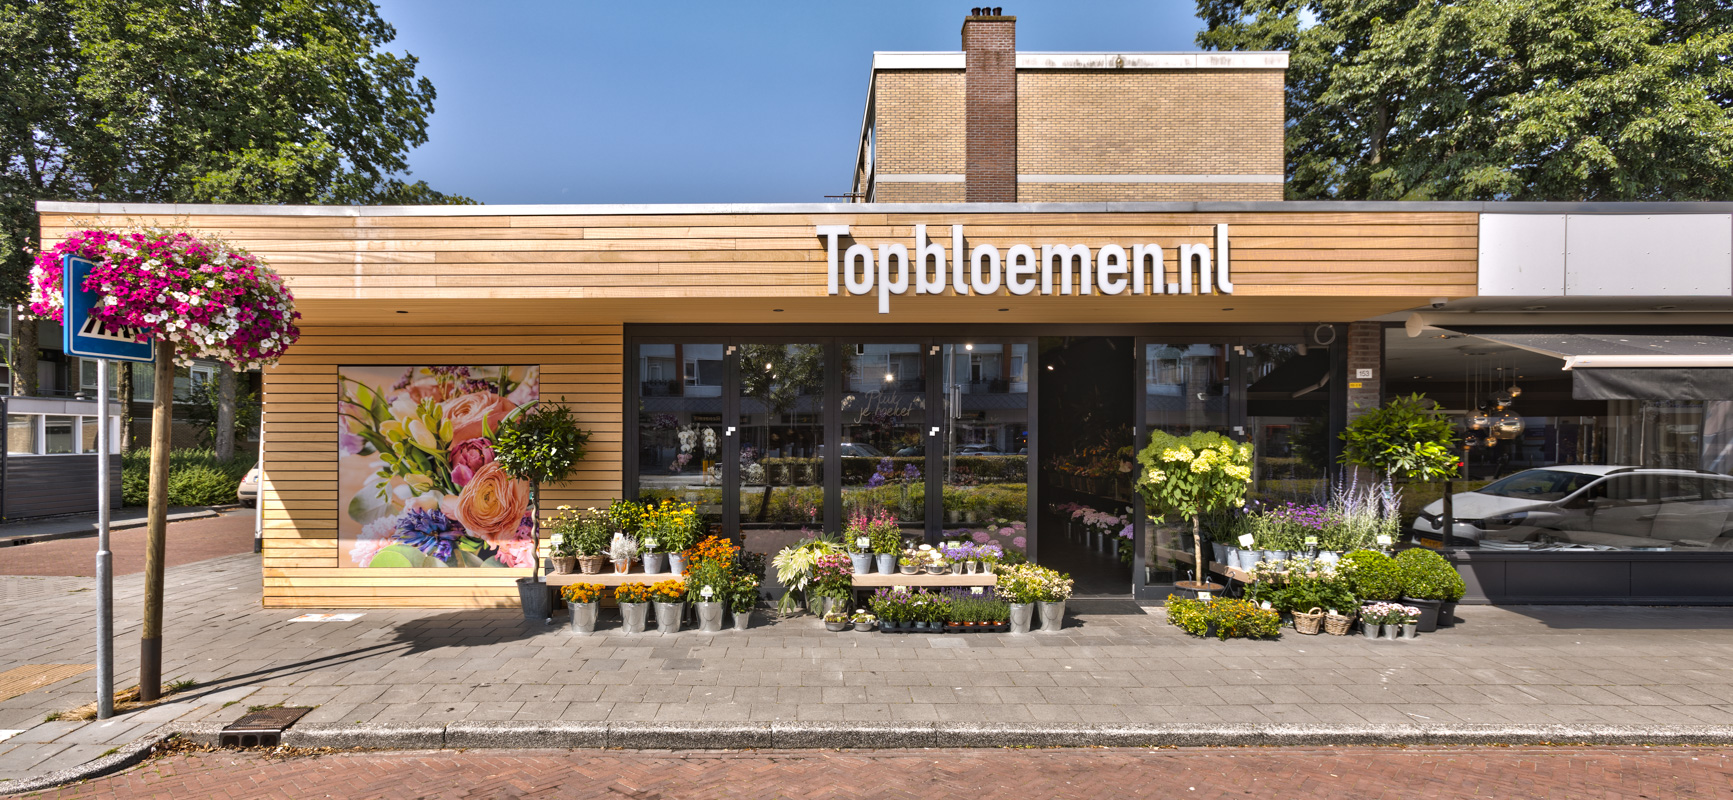 Topbloemen.nl | Amstelveen